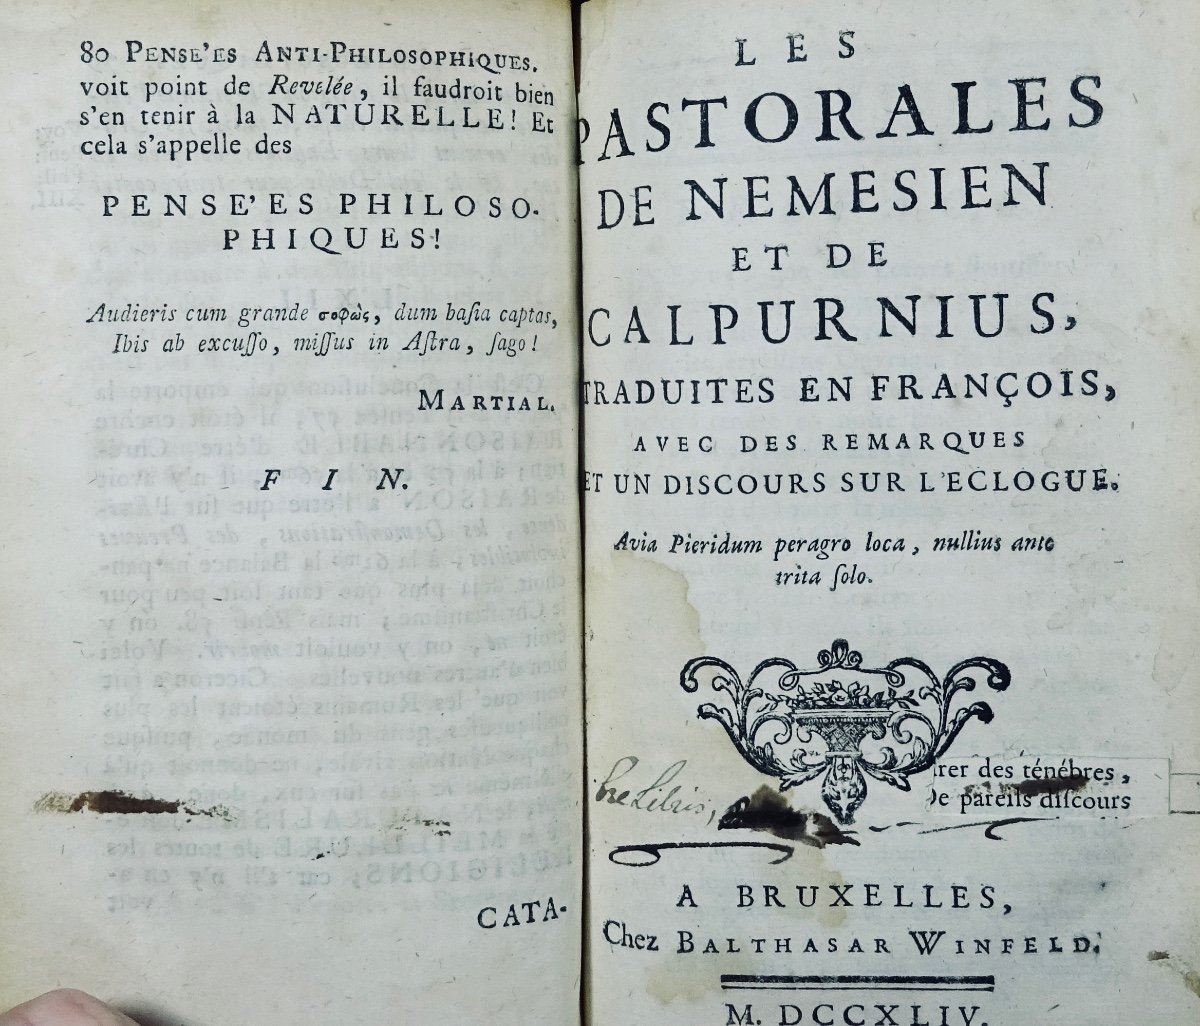 [DOUAZAC - ALLAMAND - MAIRAULT] Receuil de plusieurs textes du 18ème siècle. 1753.-photo-8